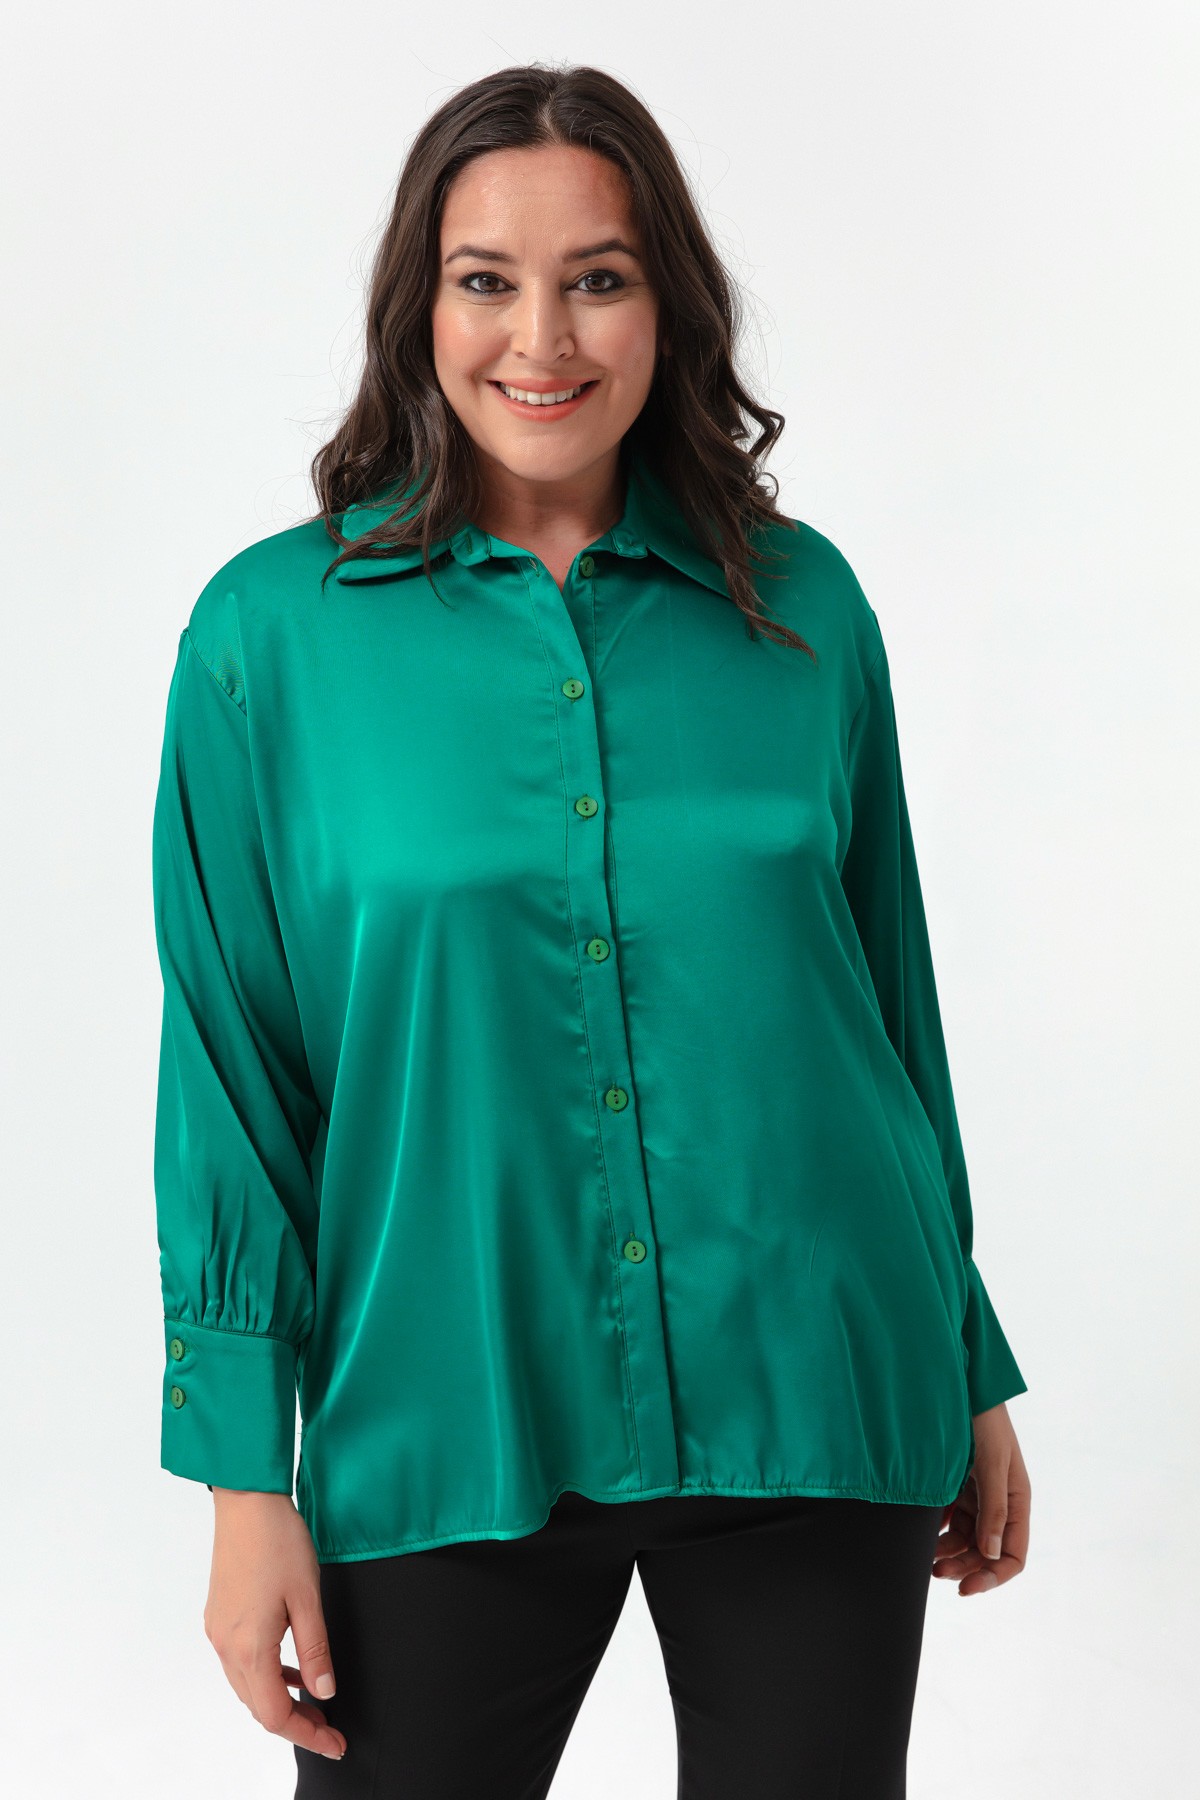 Kadın Büyük Beden Saten Gömlek - Zümrüt Yeşili